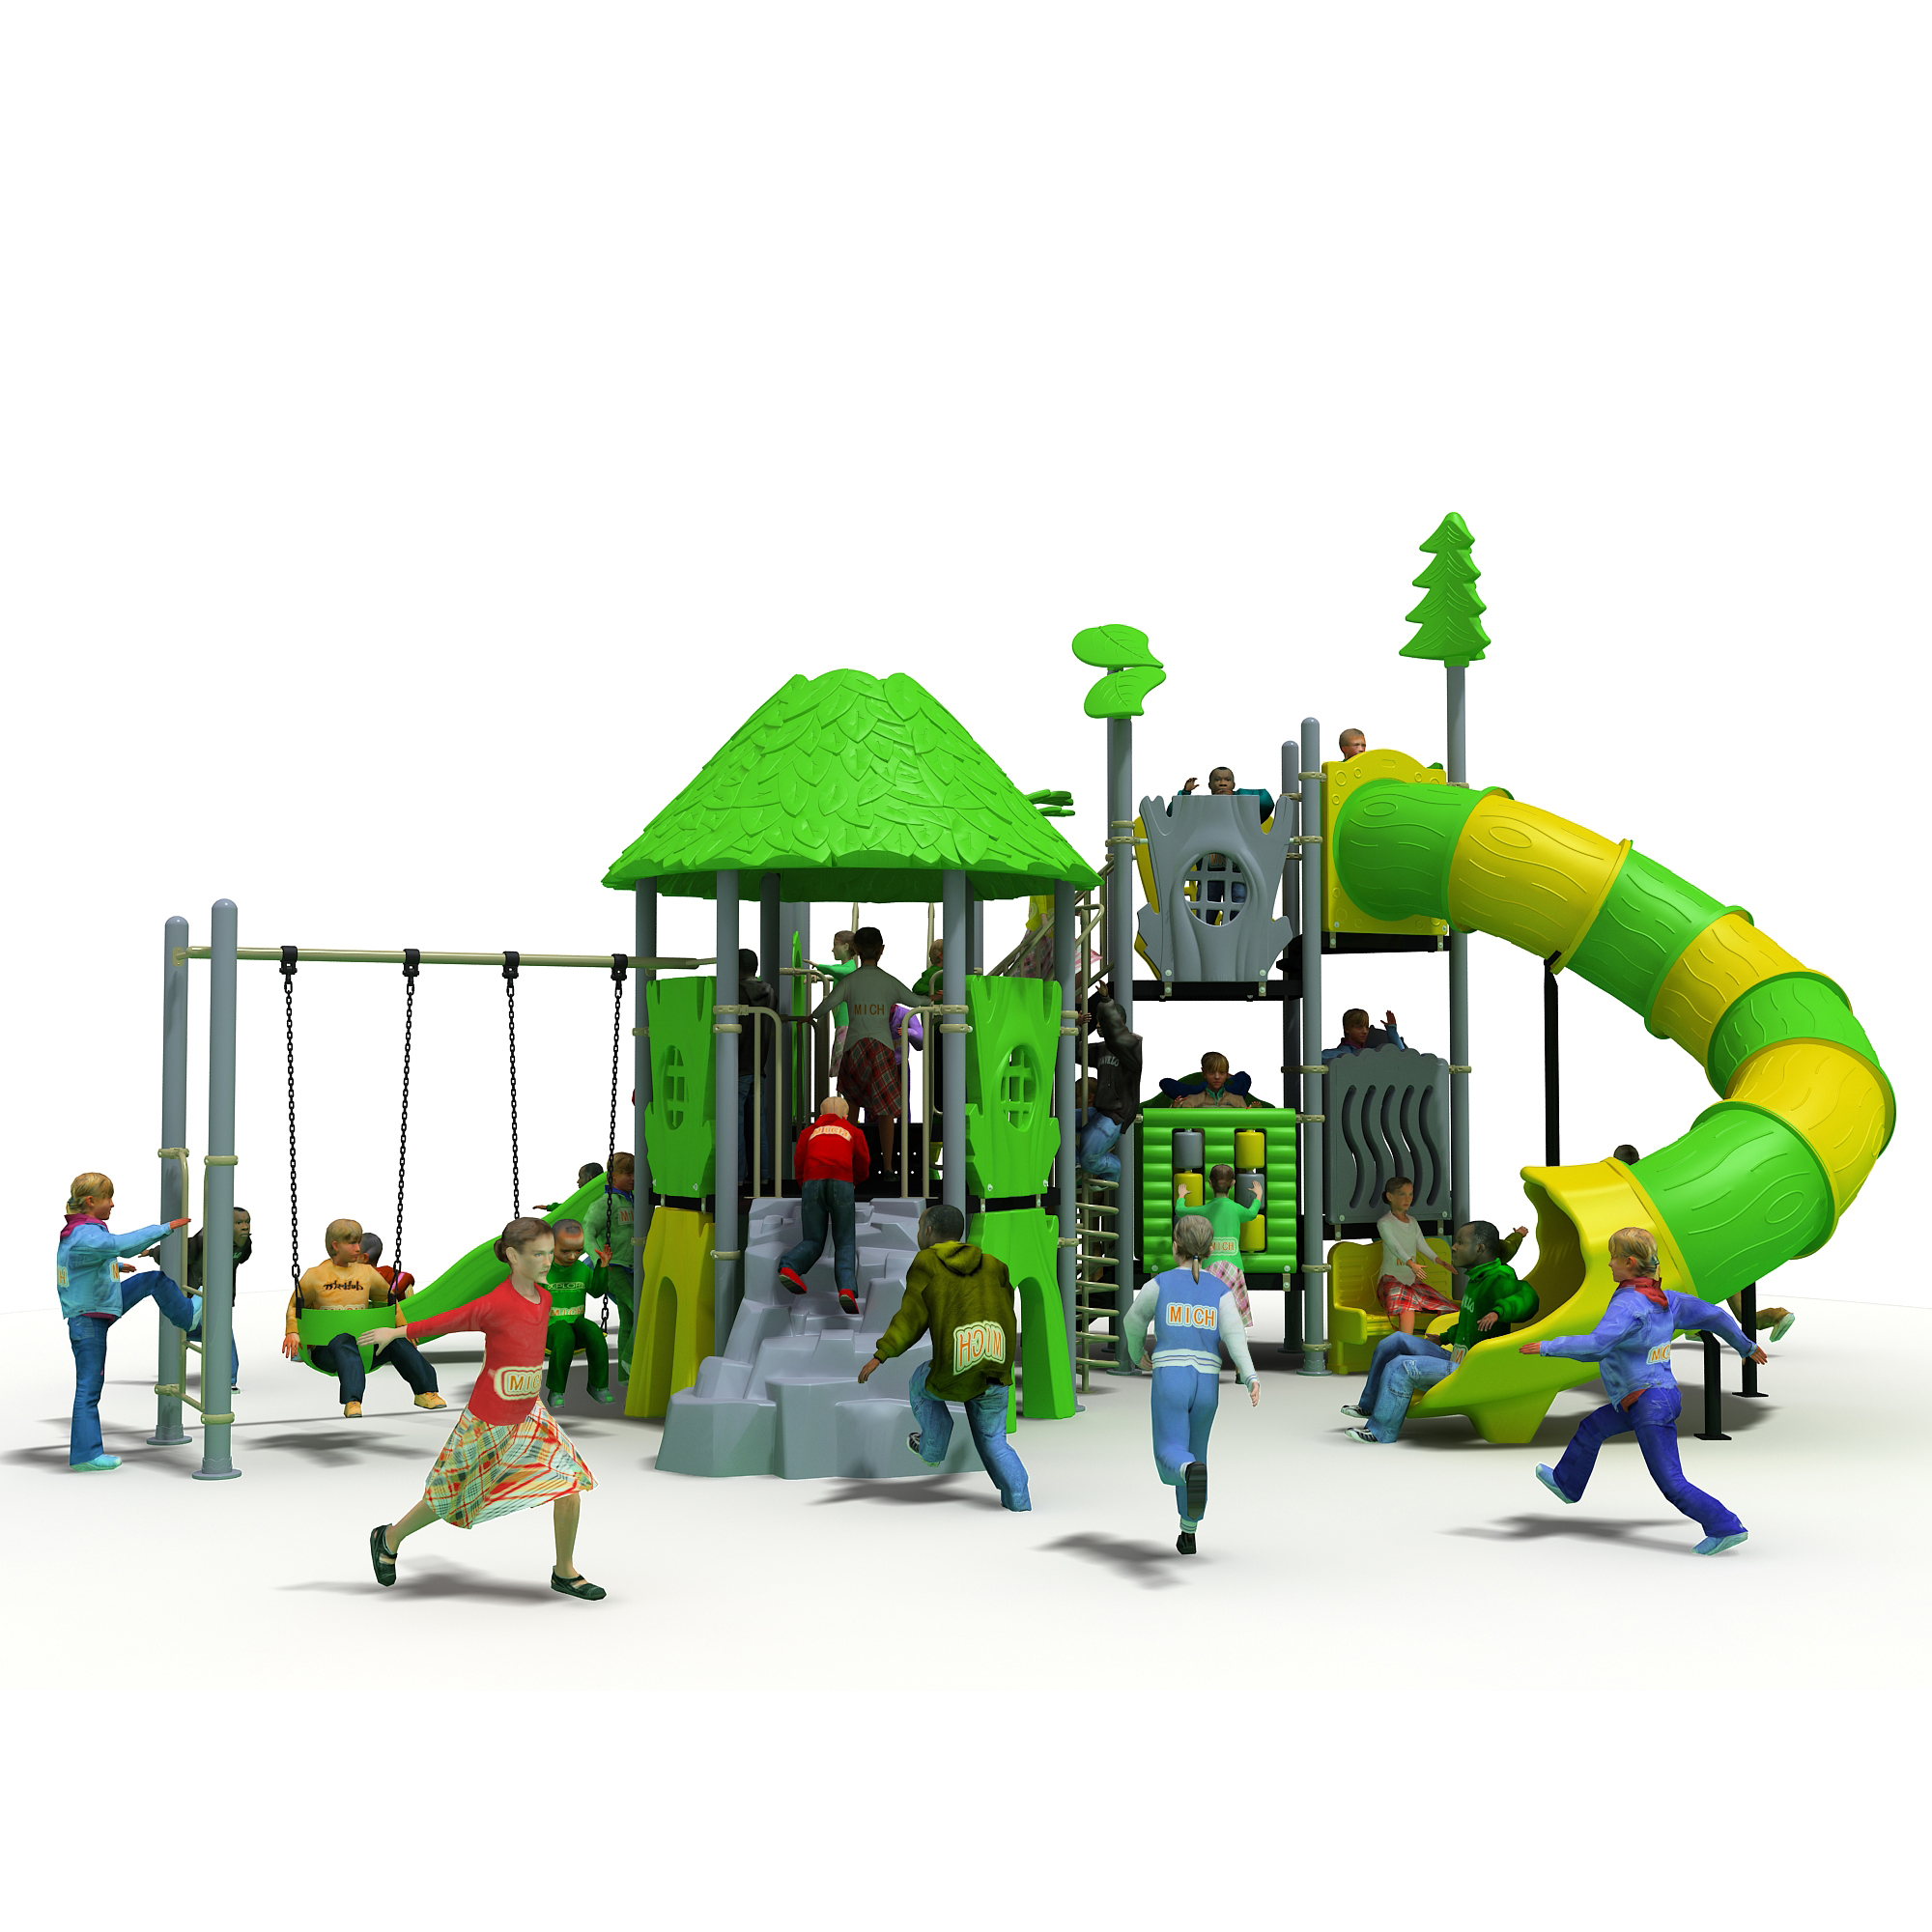 Importancia del juego al aire libre para niños pequeños